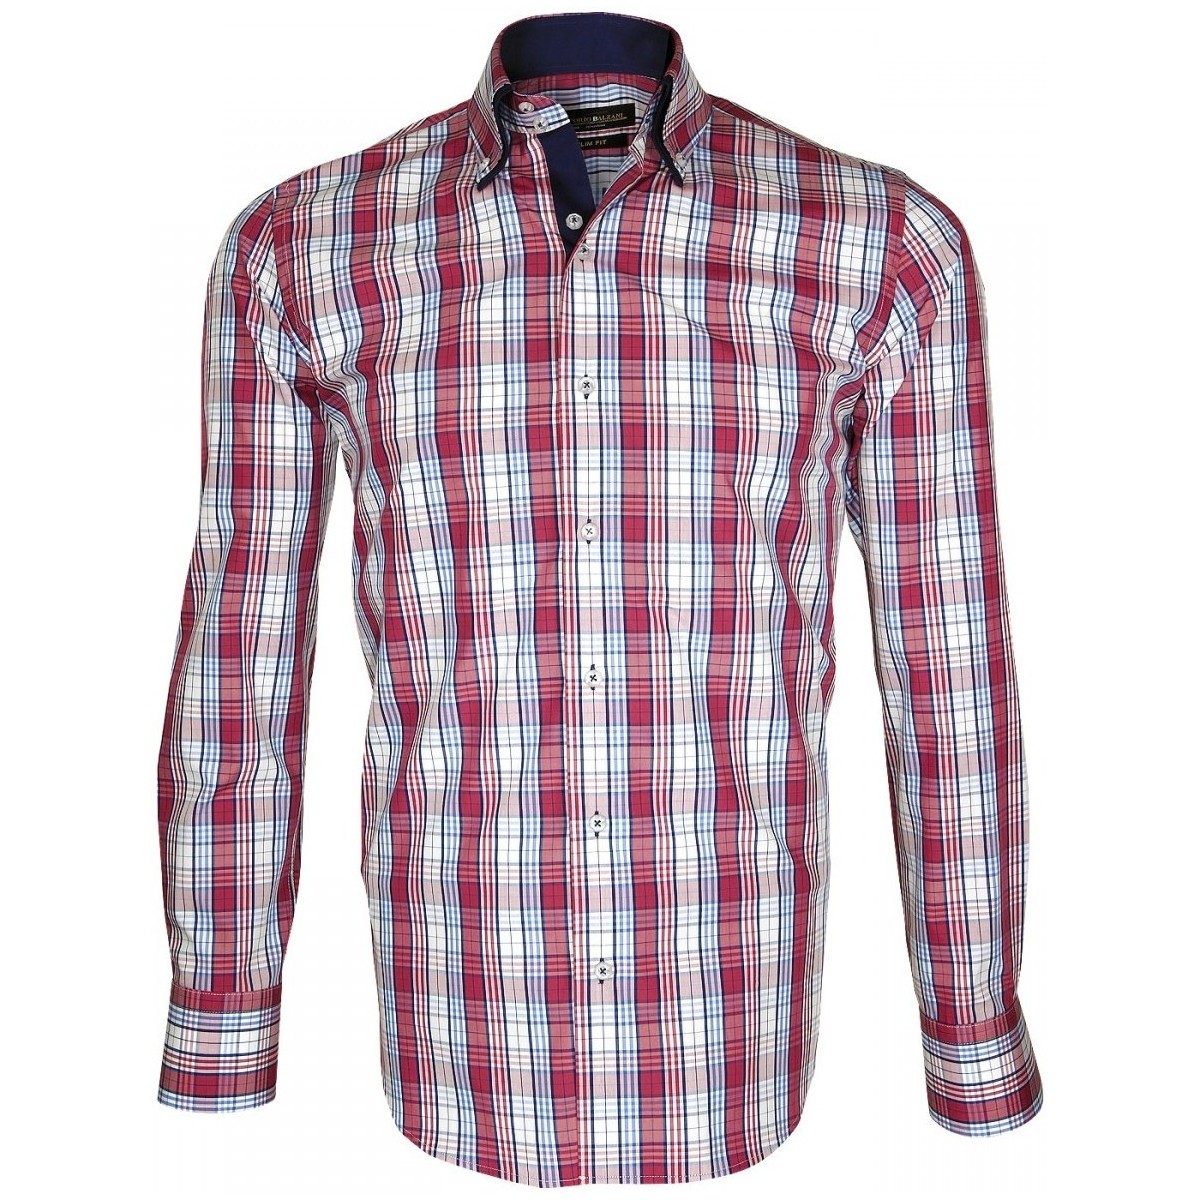 Vêtements Homme Chemises manches longues Emporio Balzani chemise tartan donizzo bordeaux Rouge